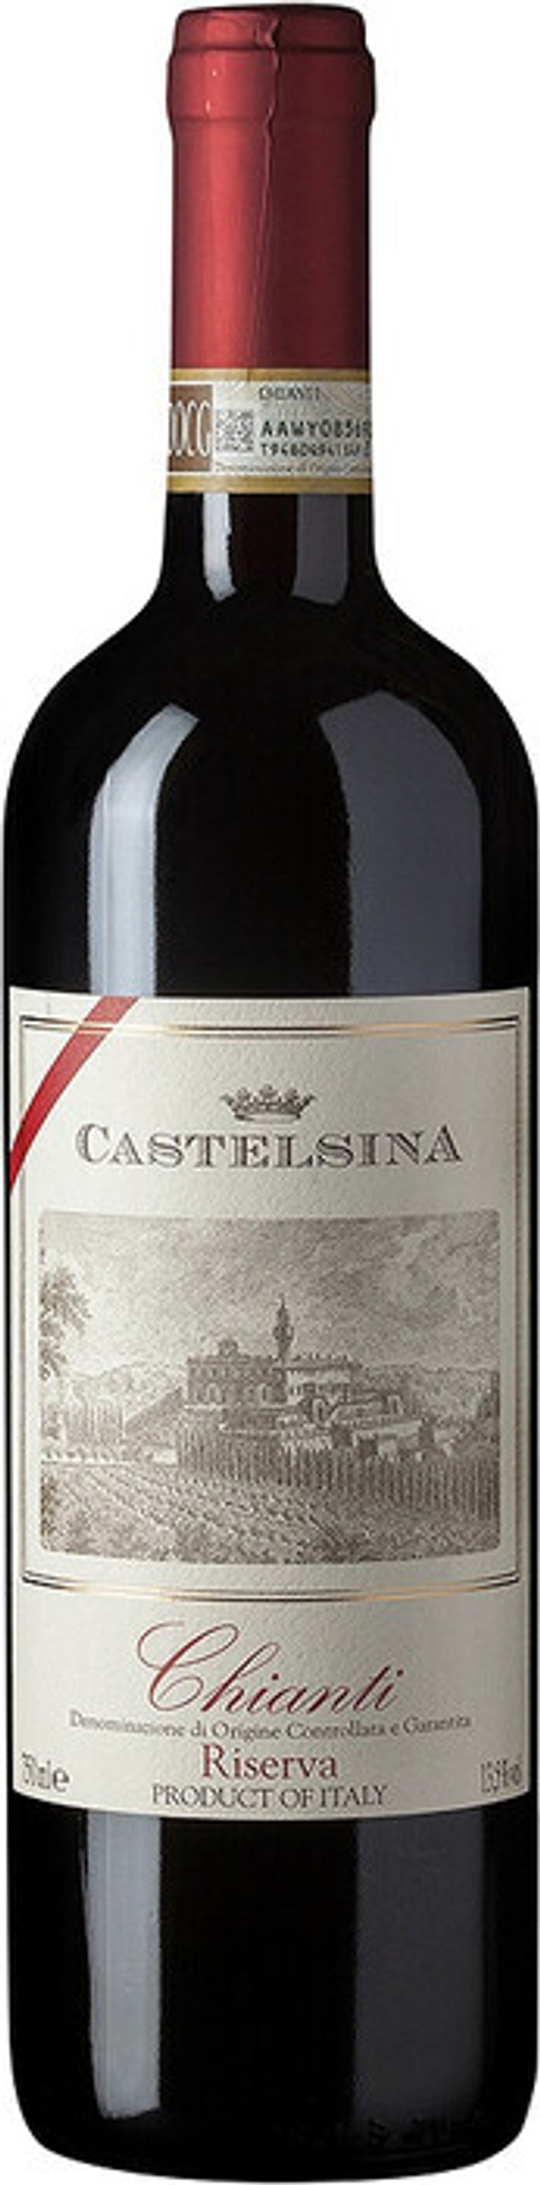 Вино Castelsina Chianti DOCG Riserva, 0,75 л.